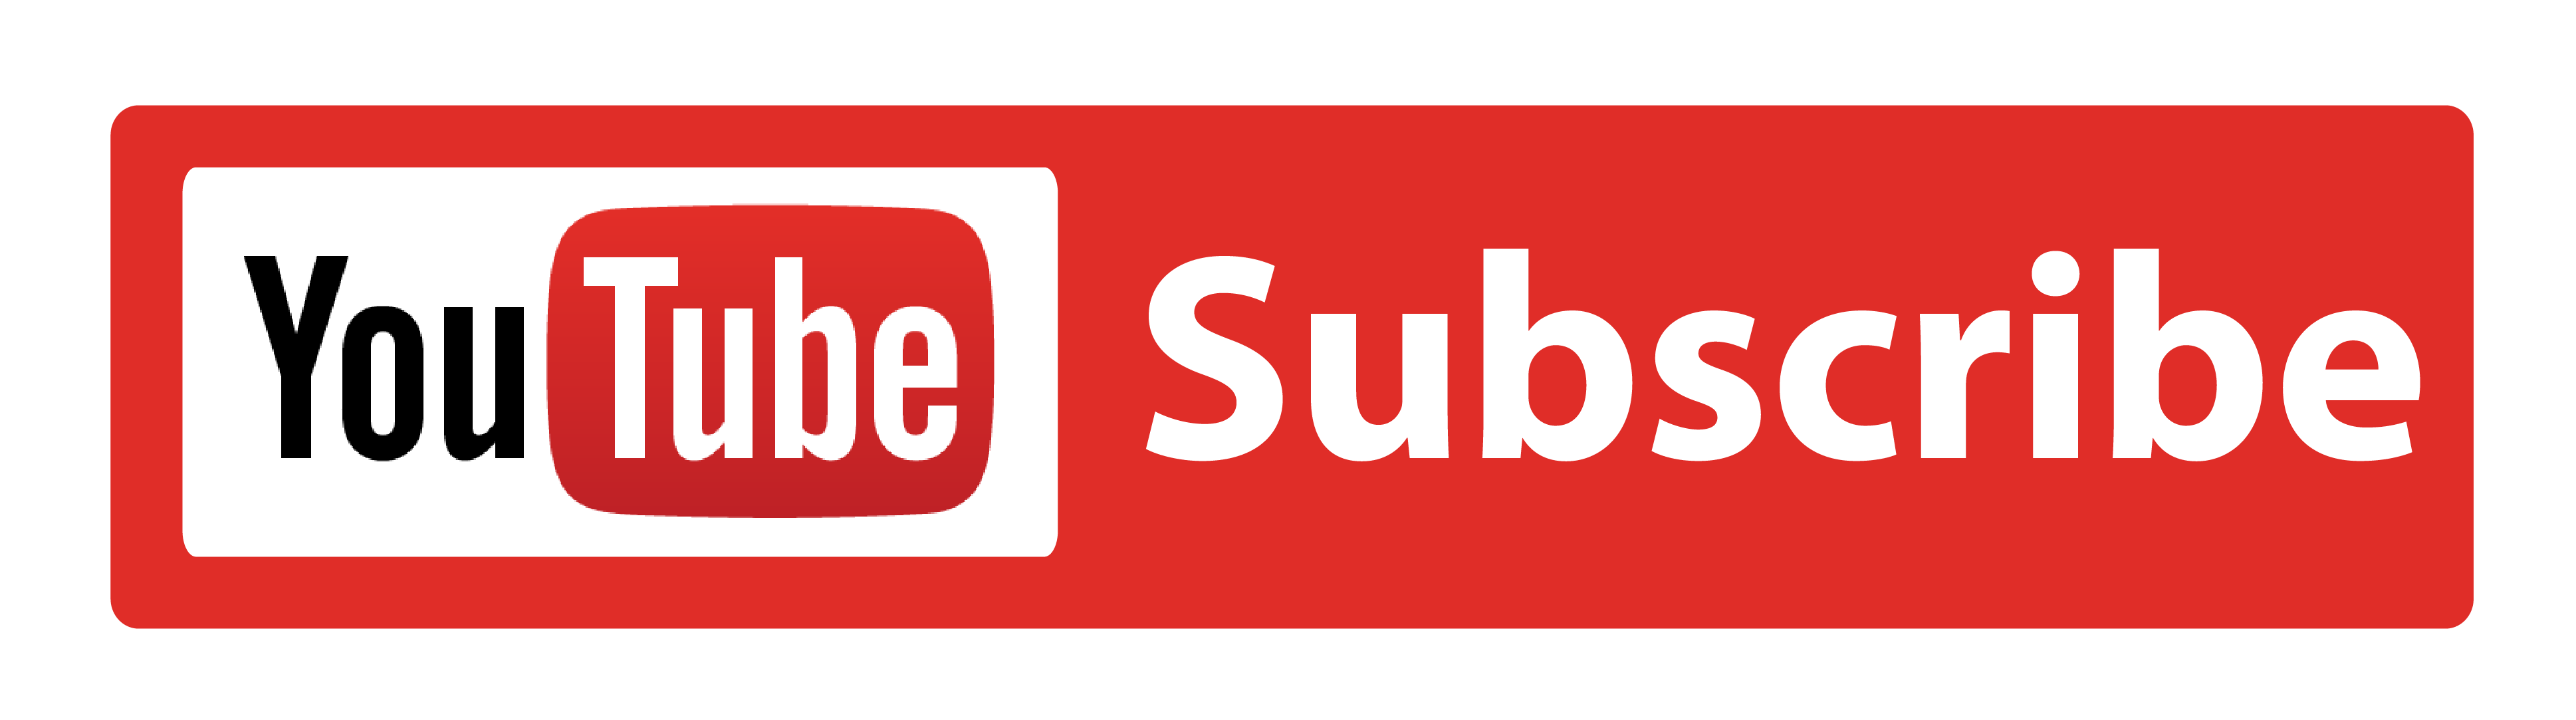 youtube-subscribe-logo-png-wwwimgkidcom-the-image-4548